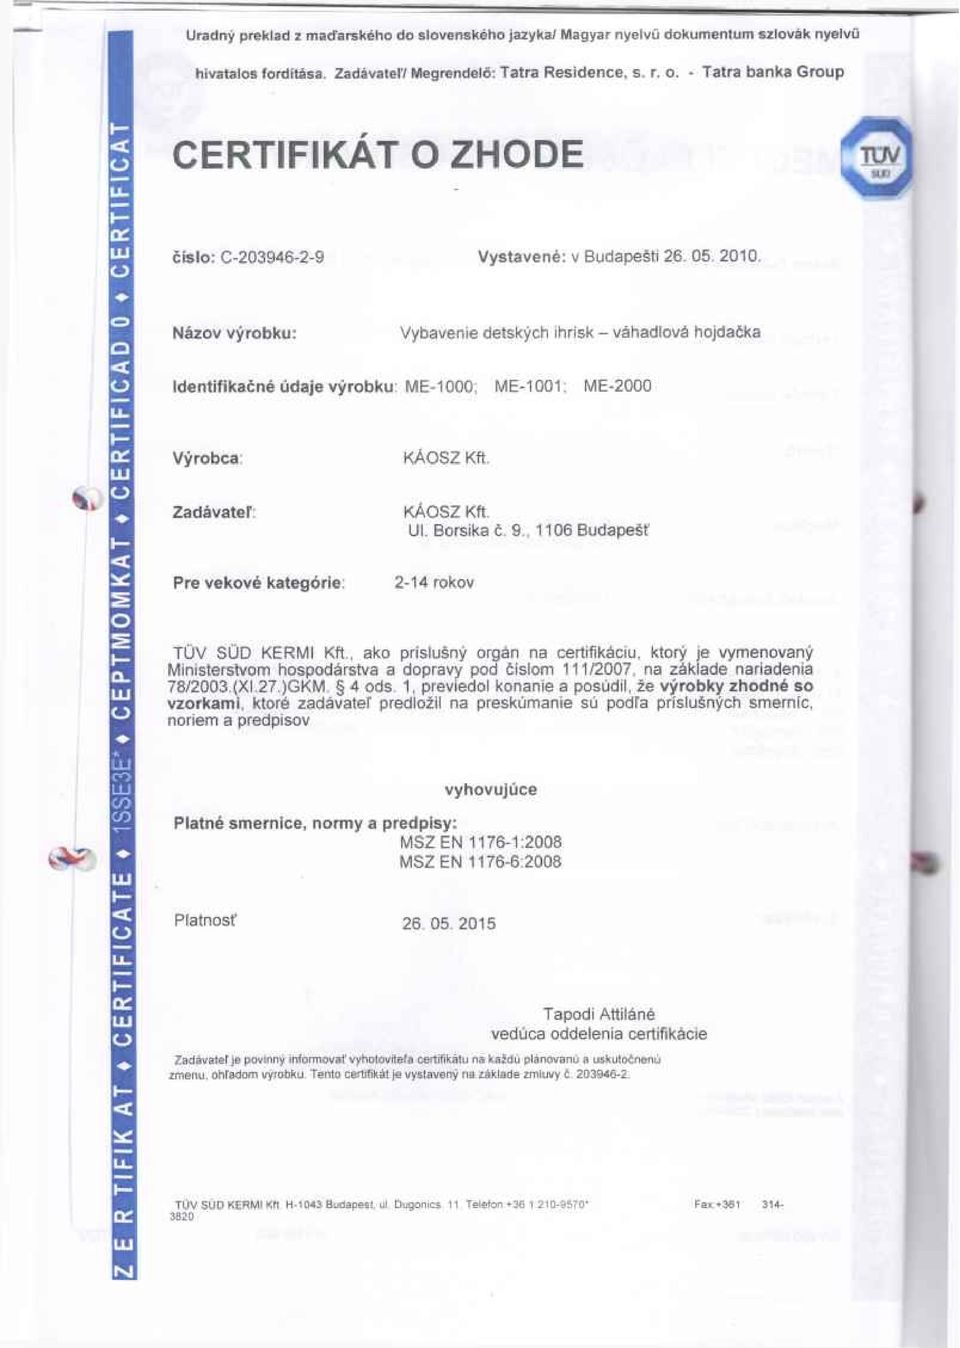 , 1106 Budapešť 2-14 rokov íl TUV SUD KERMI Kft., ako príslušný orgán na certifikáciu, ktorý je vymenovaný Ministerstvom hospodárstva a dopravy pod číslom 111/2007, na základe nariadenia 78/2003.(XI.